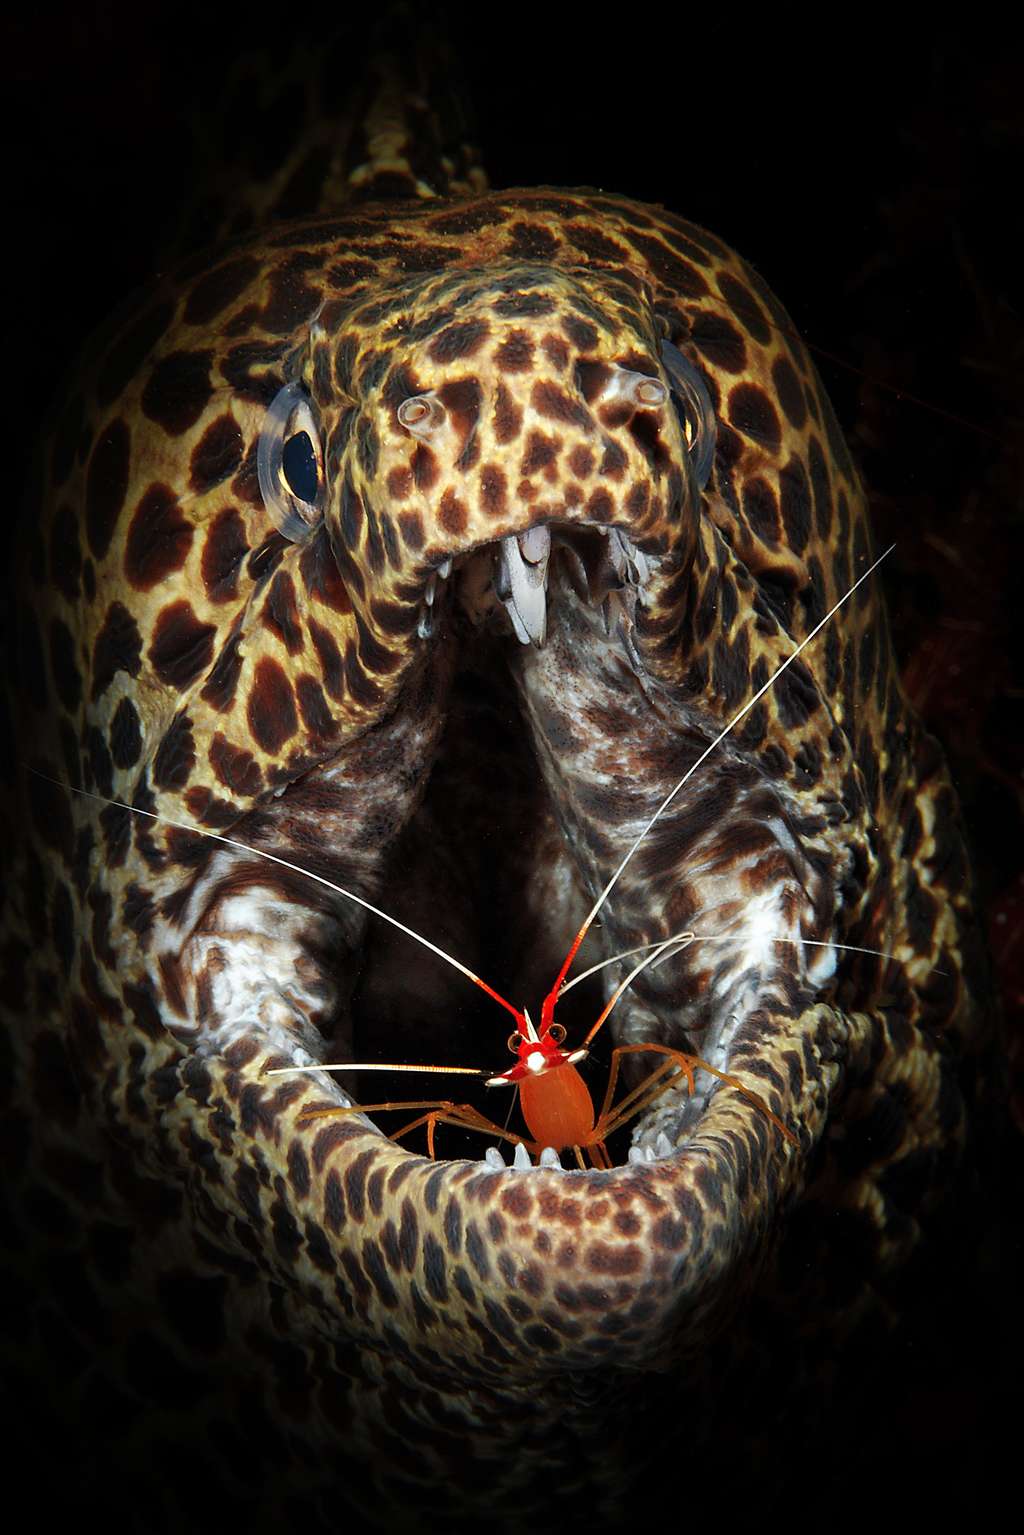 L'une des images en compétition : une crevette nettoyeuse surprise pendant son travail dans la bouche d'une murène. © Luc Eeckhaut